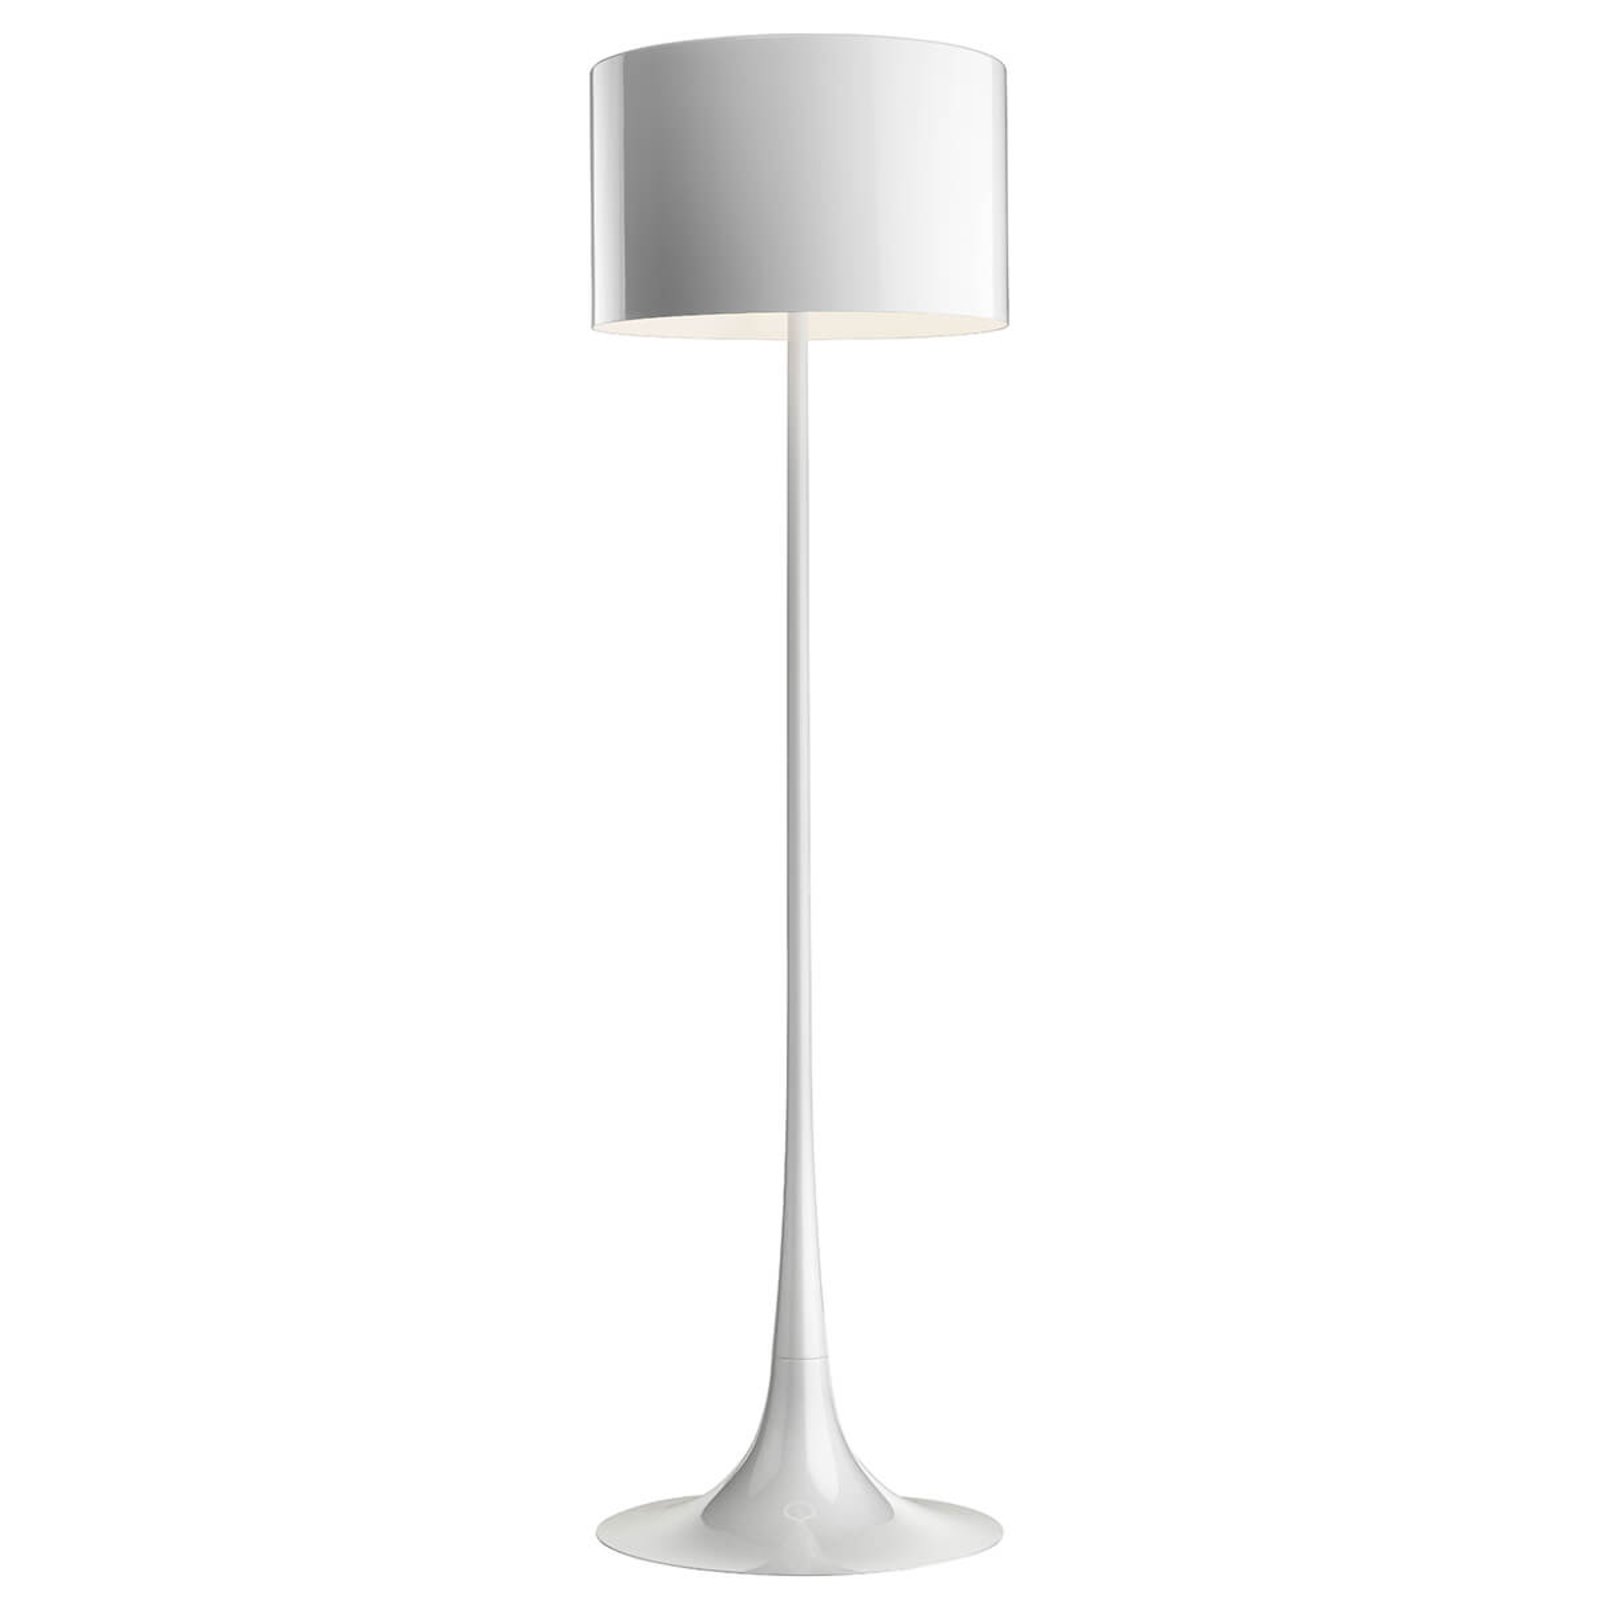 FLOS Spun Light F - white floor lamp